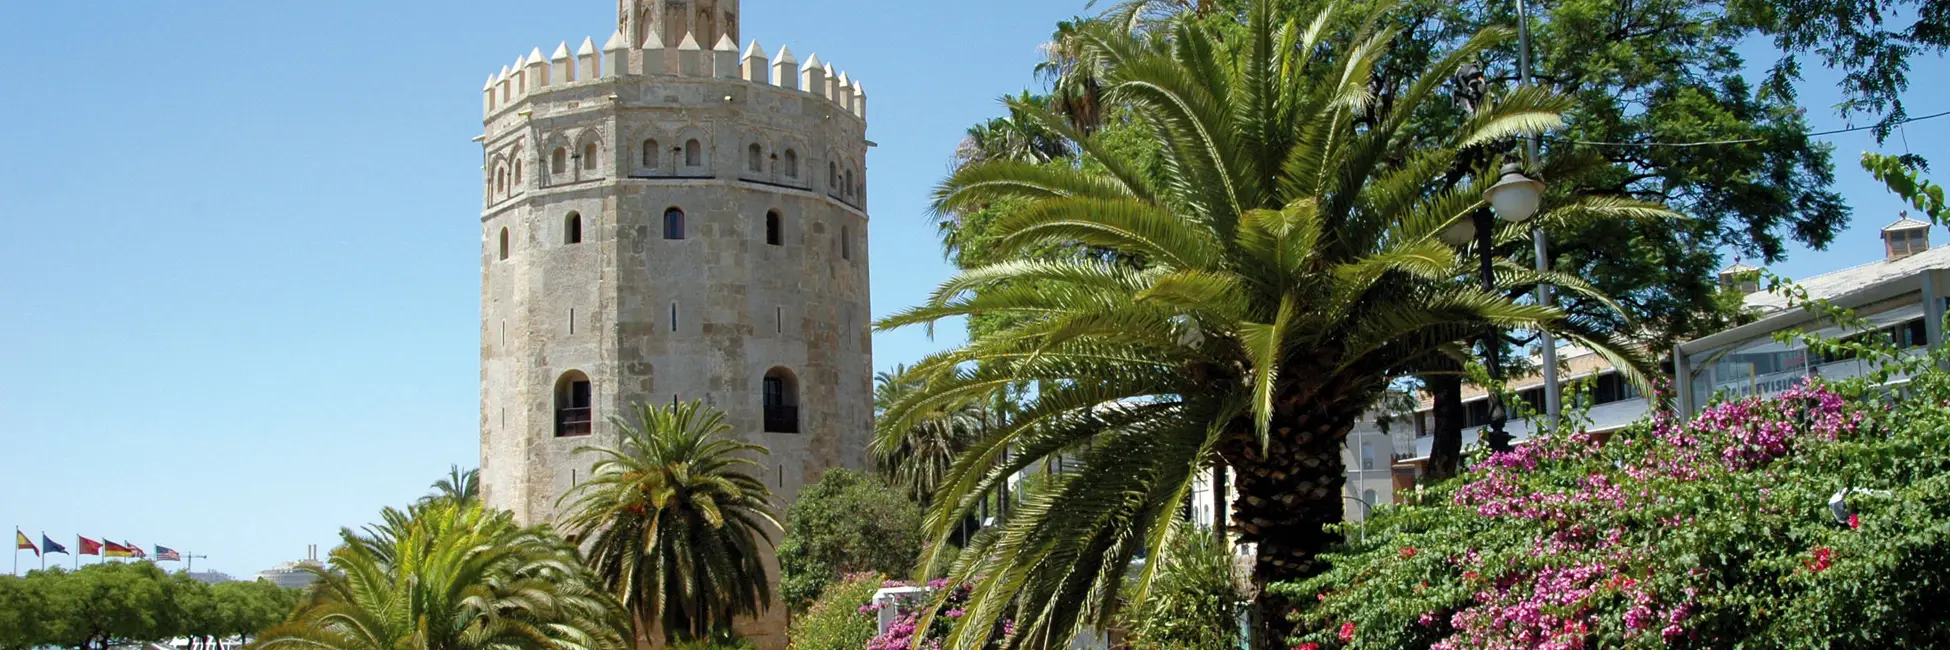 Torre del Oro à Séville 